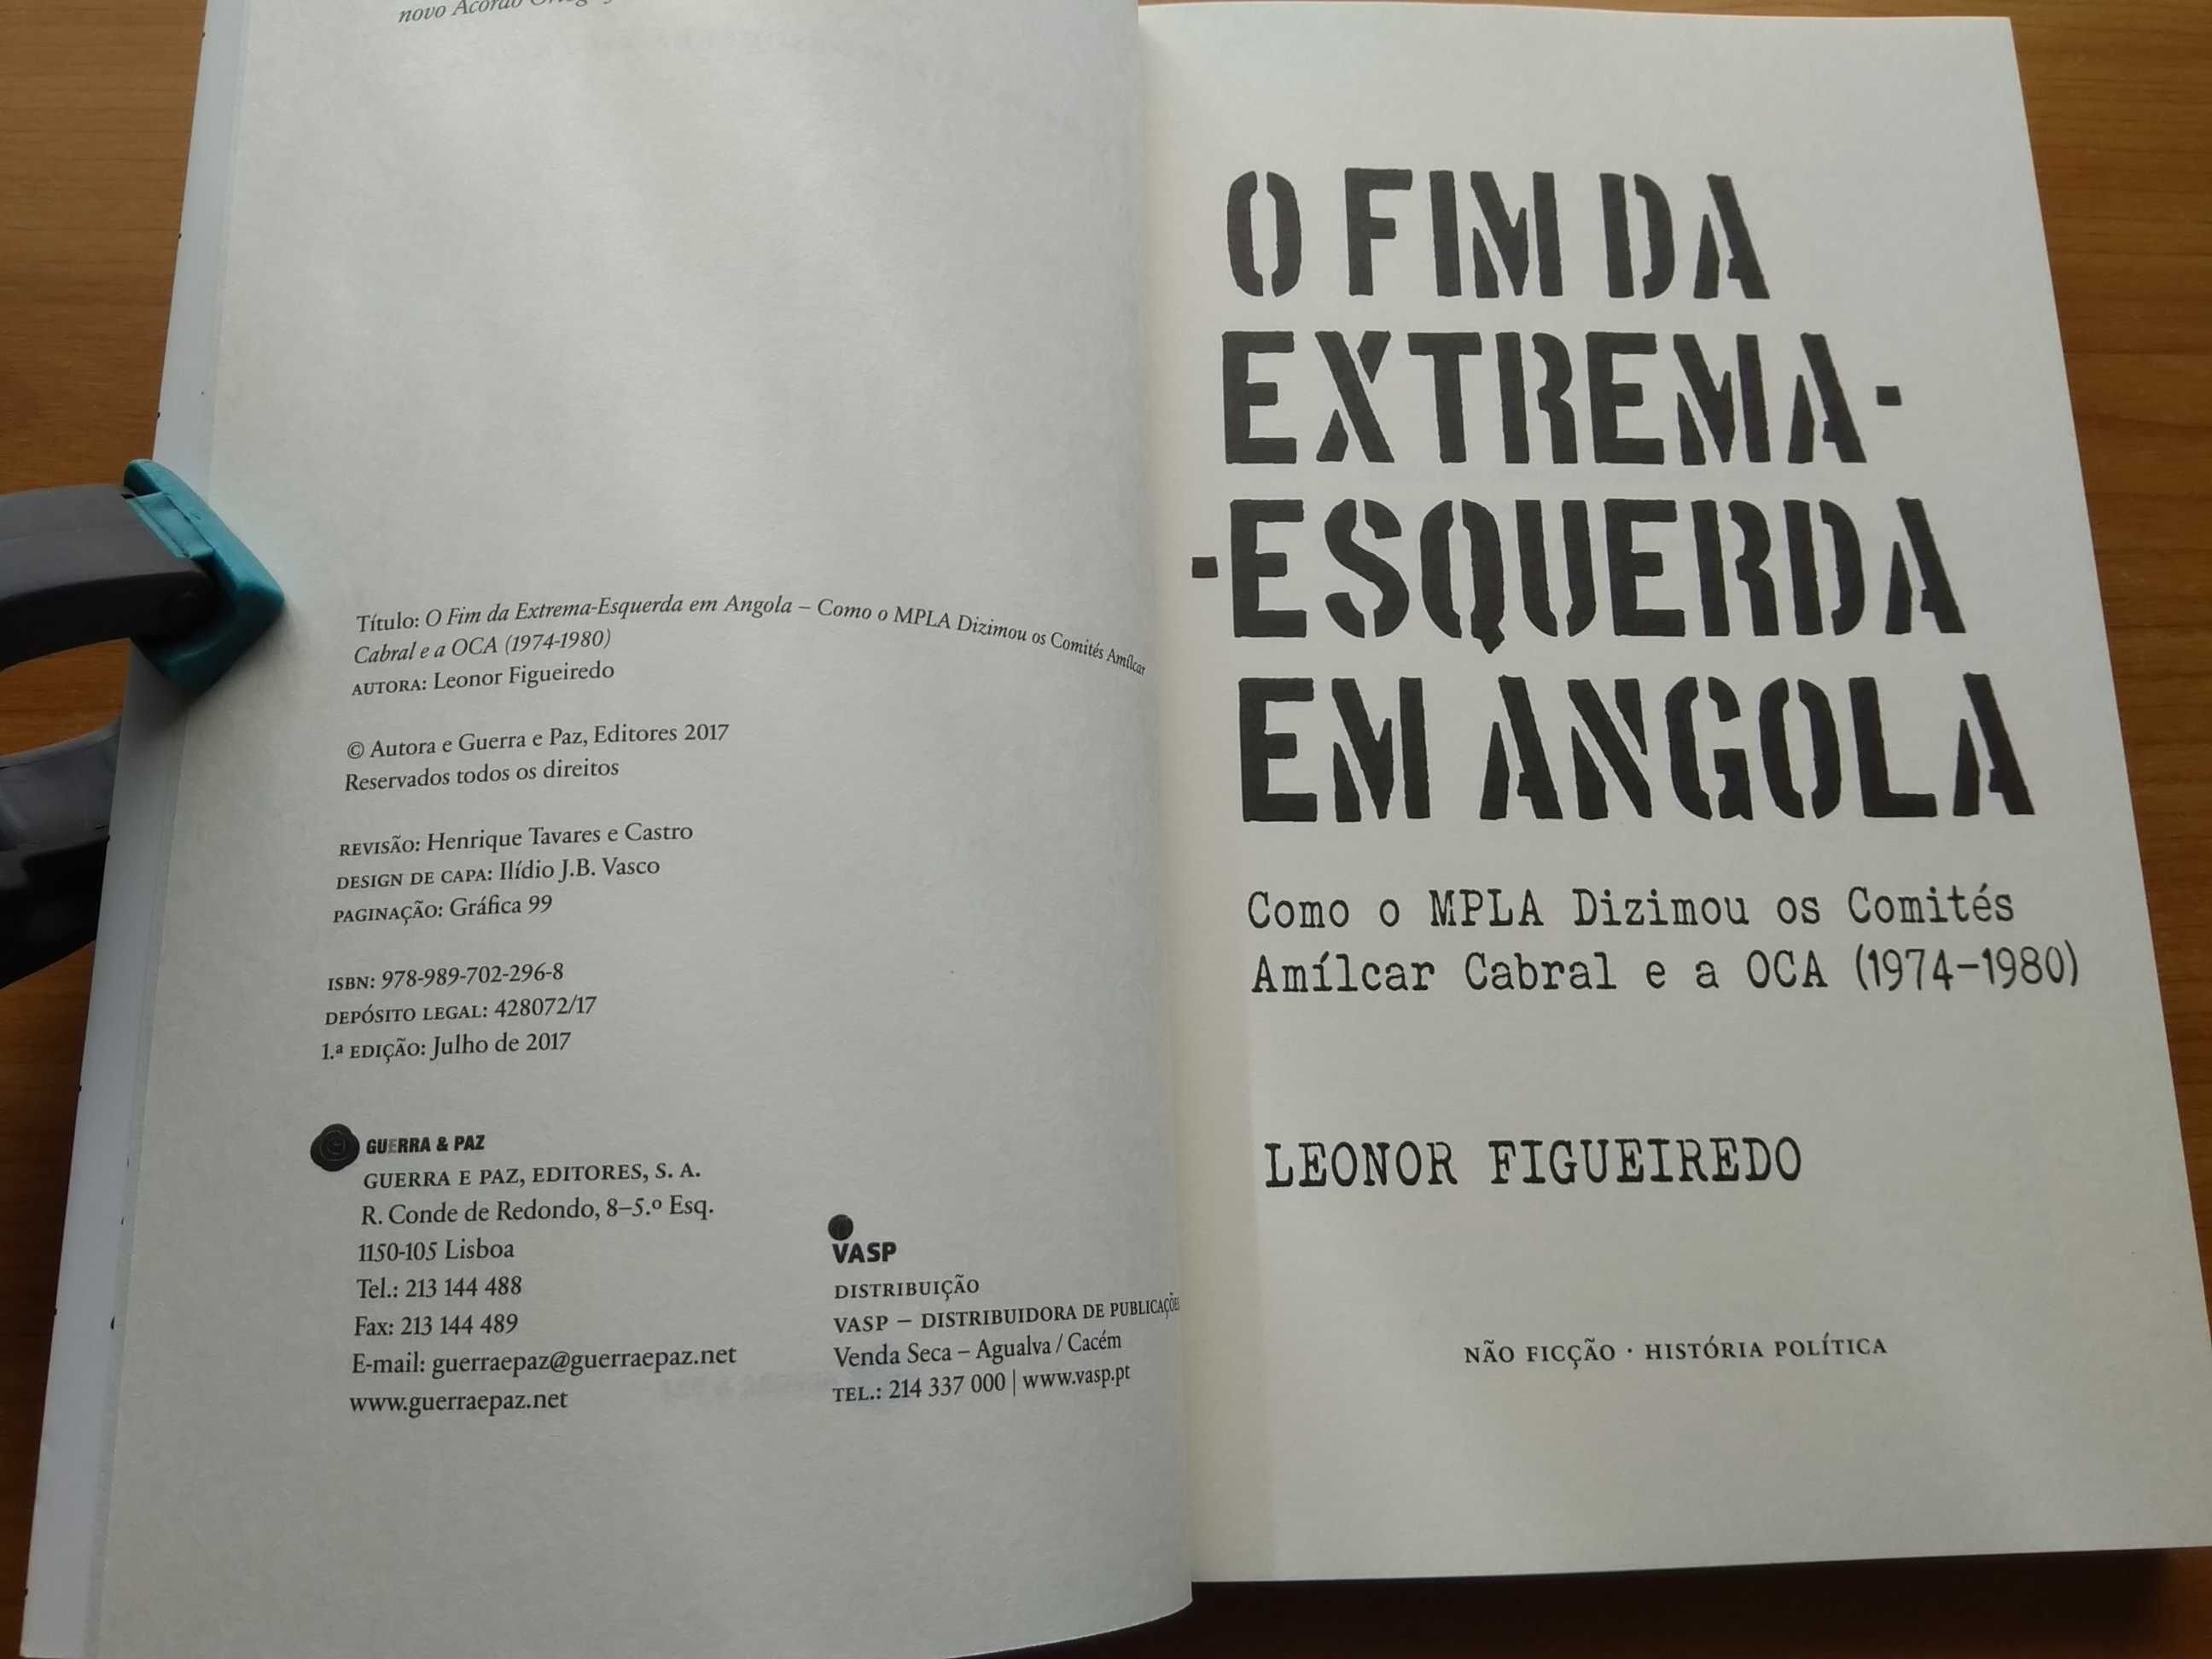 O Fim da Extrema-Esquerda em Angola - Leonor Figueiredo